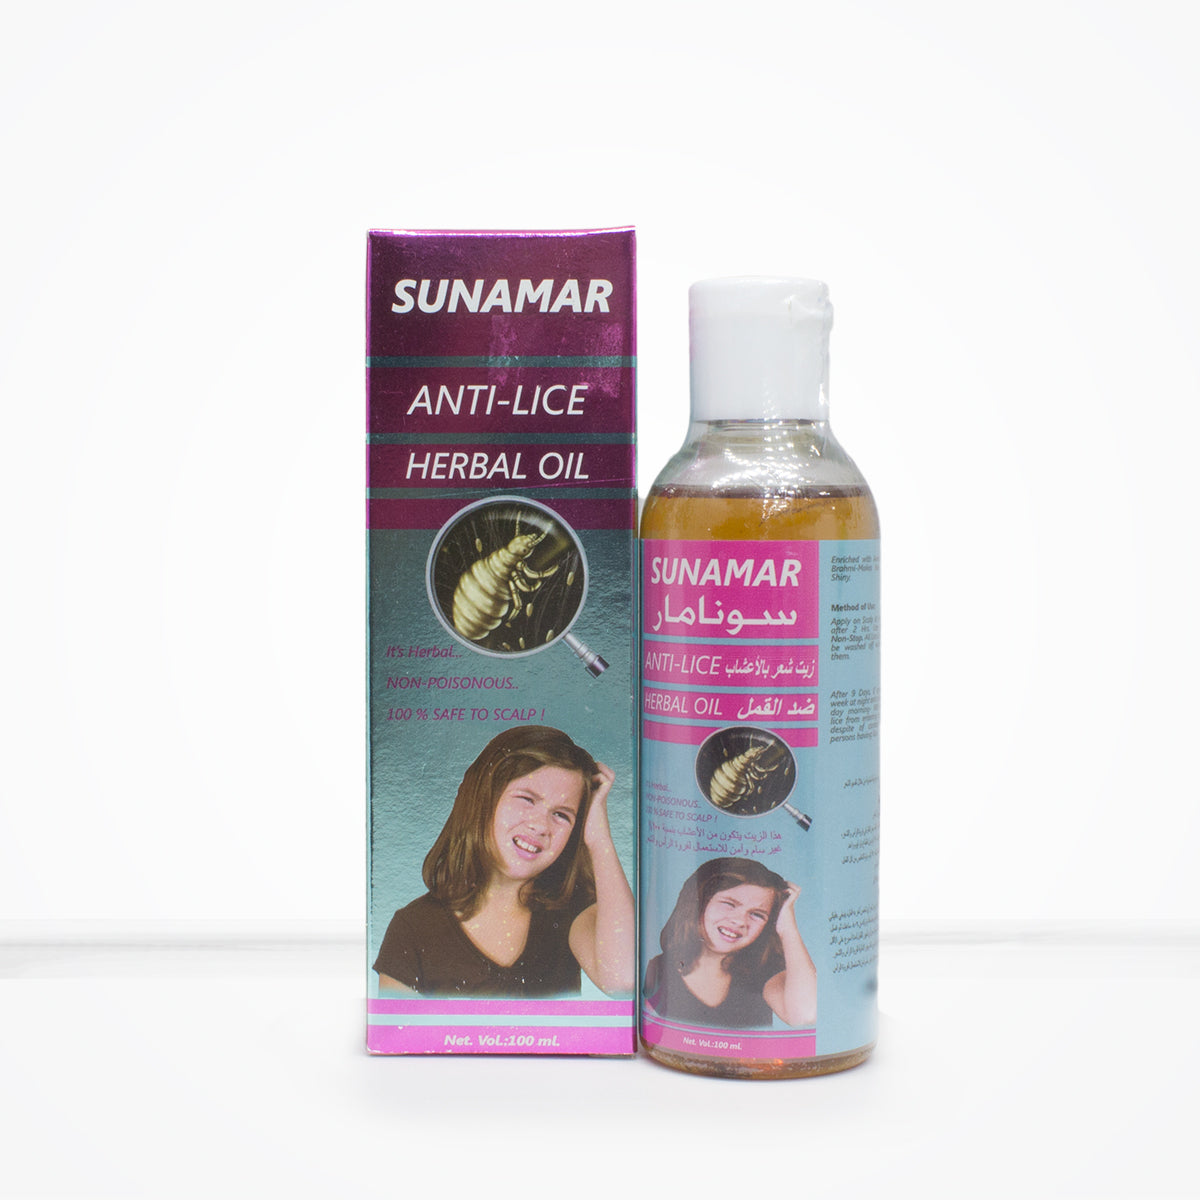 Sunamar Anti-Lice Herbal Oil 100ml